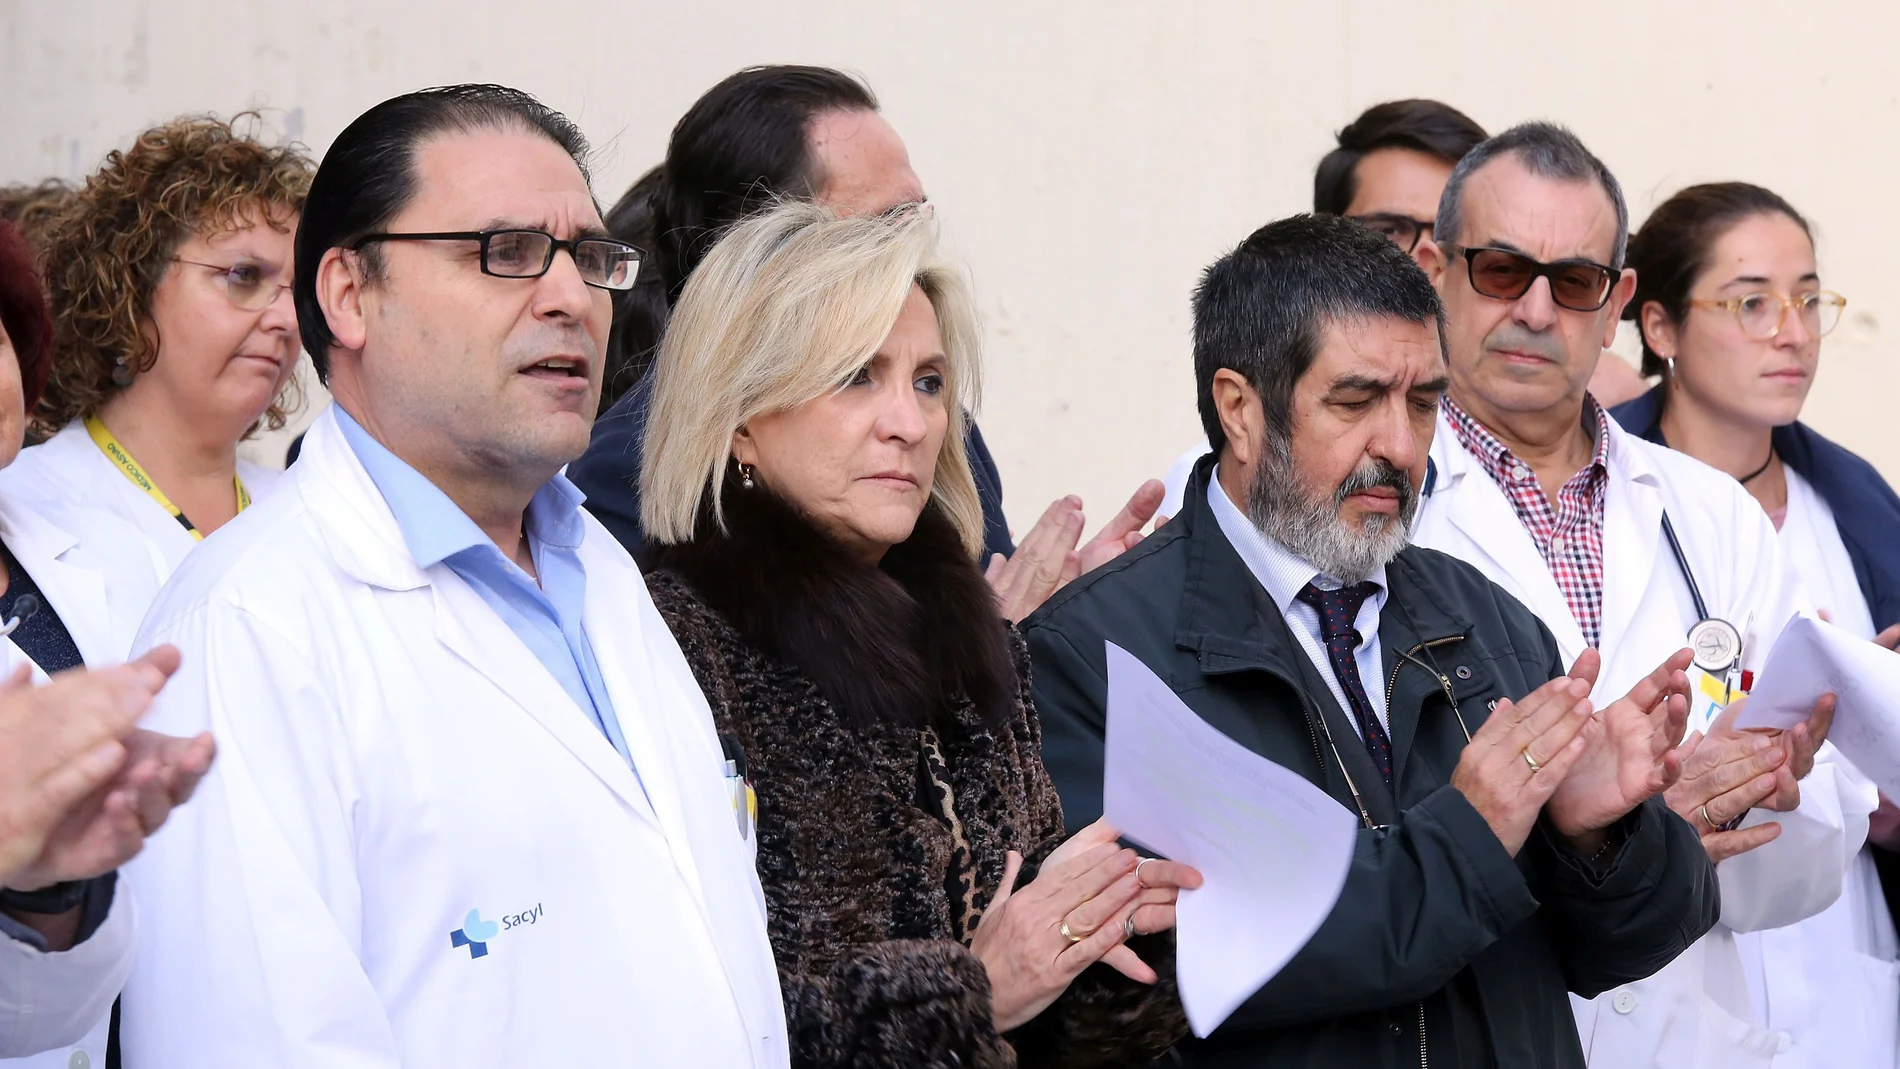 La consejera de Sanidad, Verónica Casado, y el gerente regional de Salud, Manuel Mitadiel, durante el minuto de silencio de repulsa a la agresión de este miércoles en Valladolid